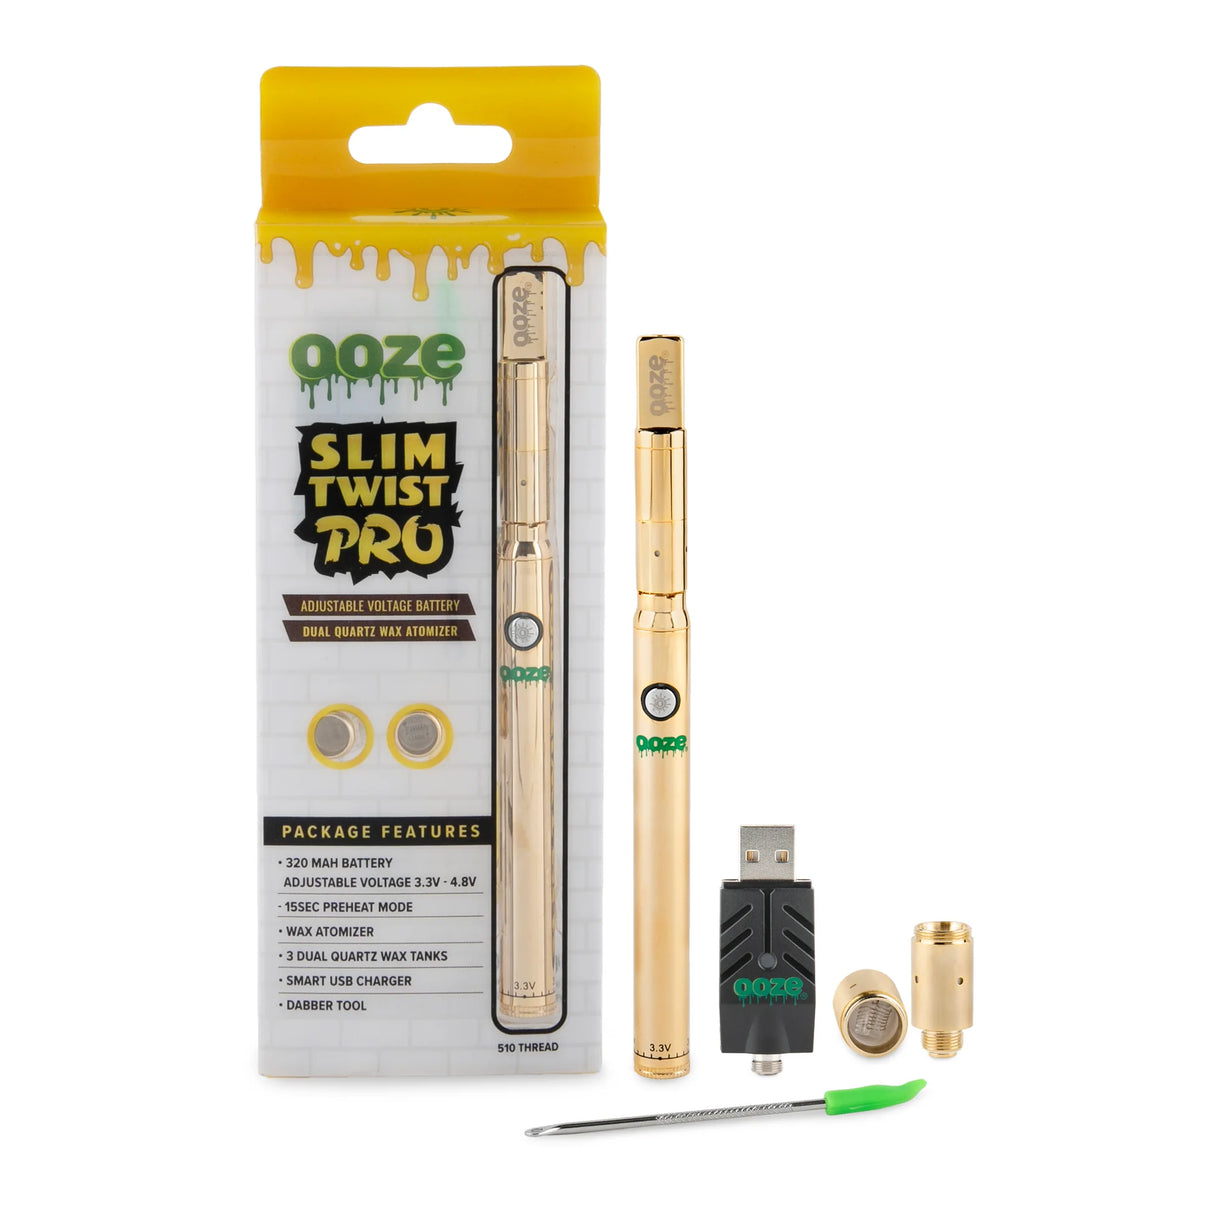 Ooze Slim Twist Pro 320mAh Wax Pen - Gold